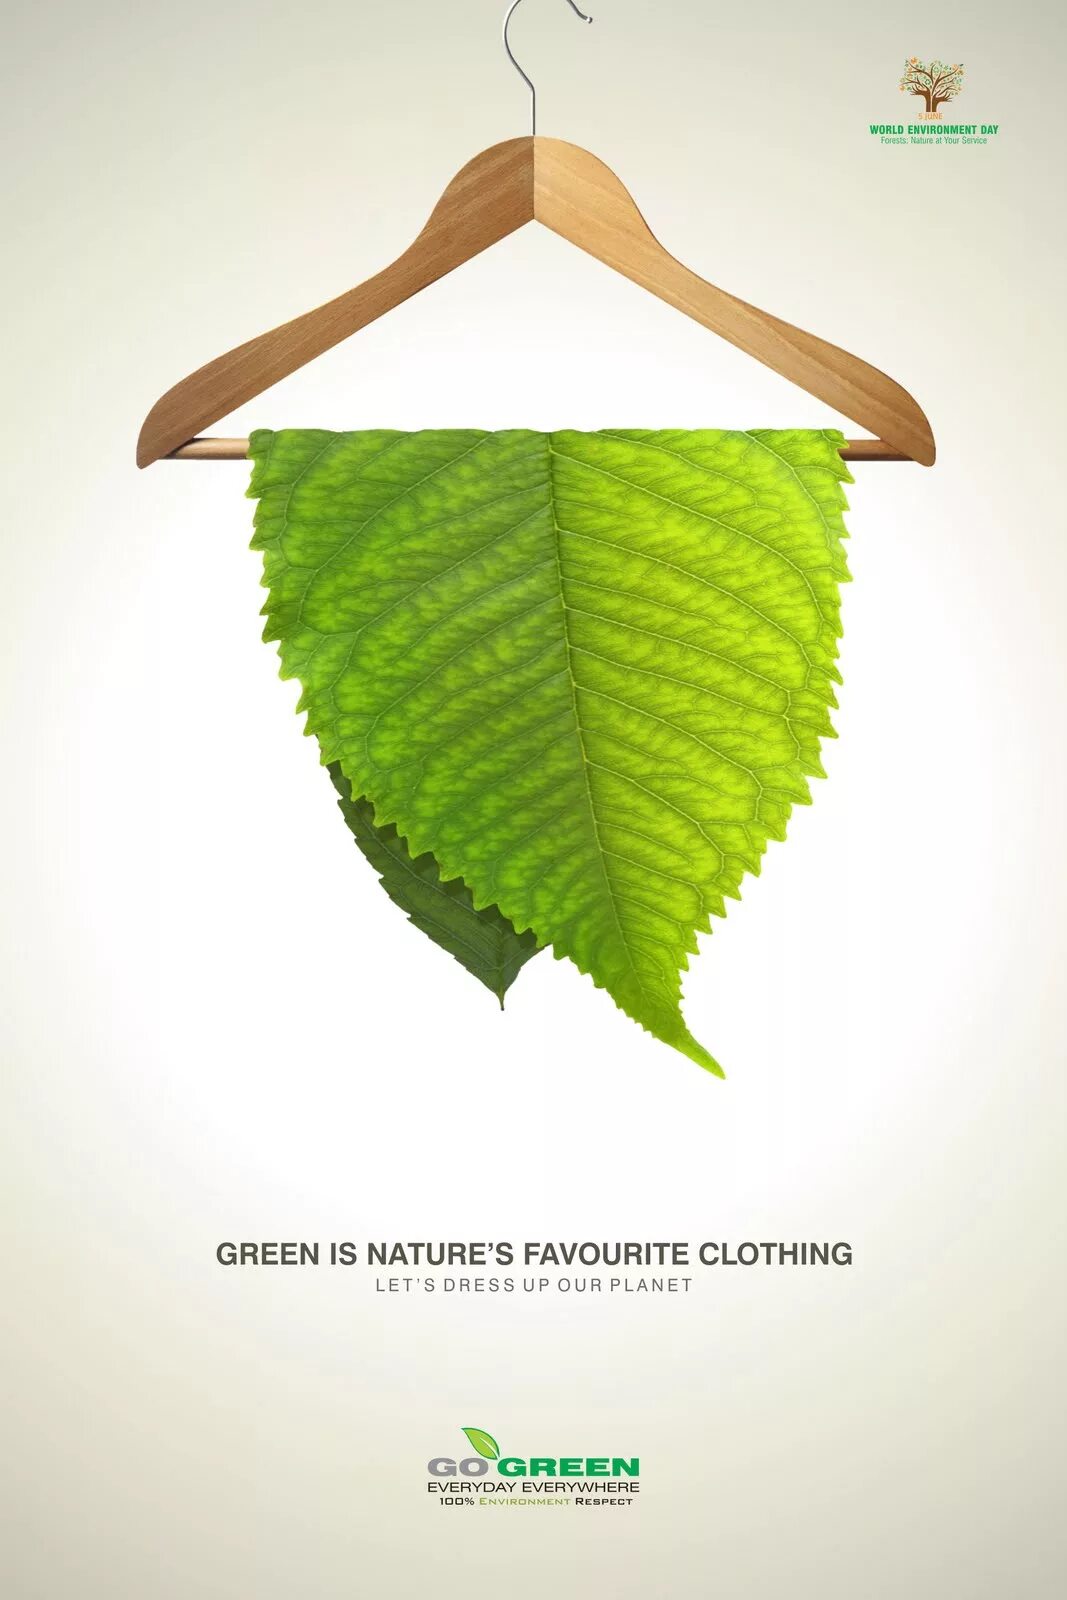 Creative day. Постер экология дизайн. Экологичность материалов для одежды. Creative environment. Экологические ткани.